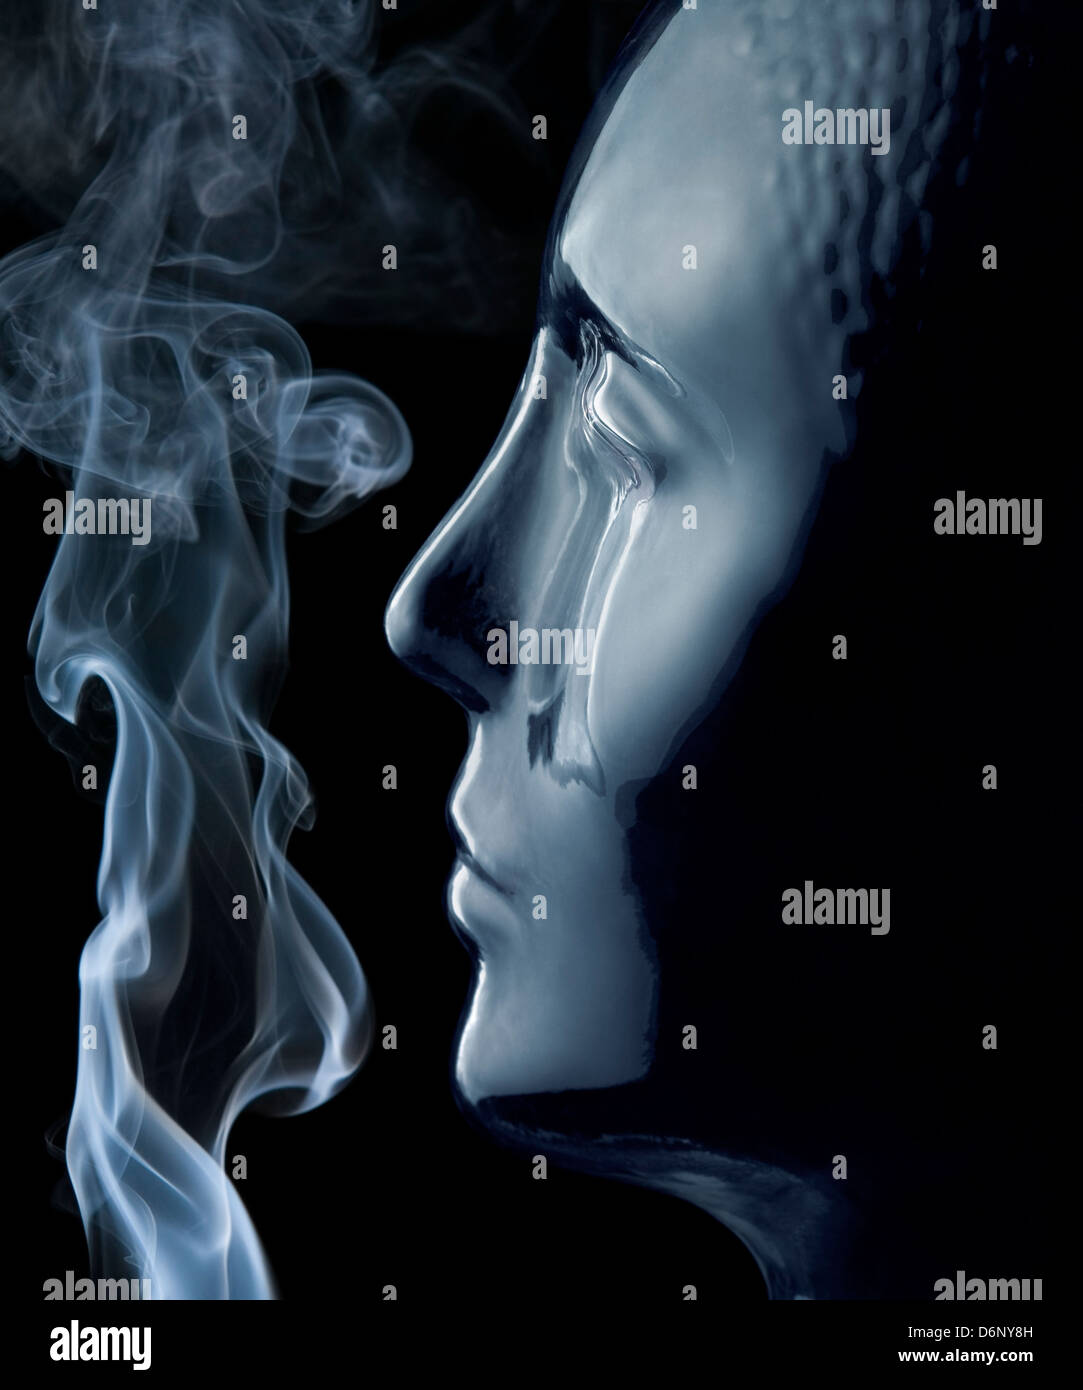 Riflettente traslucido testa umana fatta di vetro e il fumo nella parte posteriore in nero Foto Stock